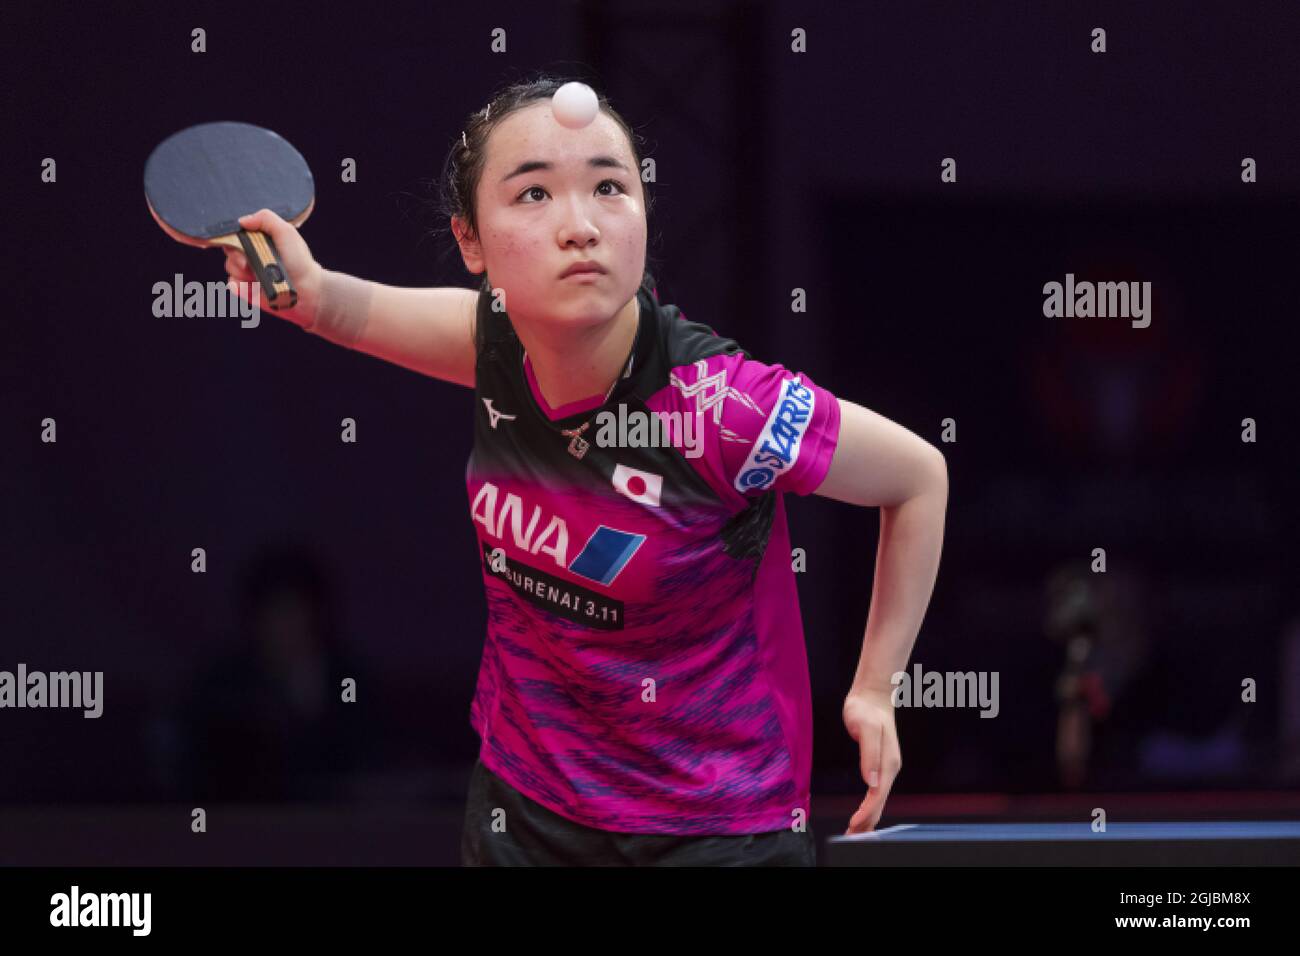 ITO Mima del Giappone, in azione contro Liu Shiwen della Cina, durante la partita femminile di tennis da tavolo al campionato svedese Open di Eriksdalshallen a Stoccolma, Svezia, il 03 novembre 2018. Foto: Stina Stjernkvist / TT / code 11610 Foto Stock